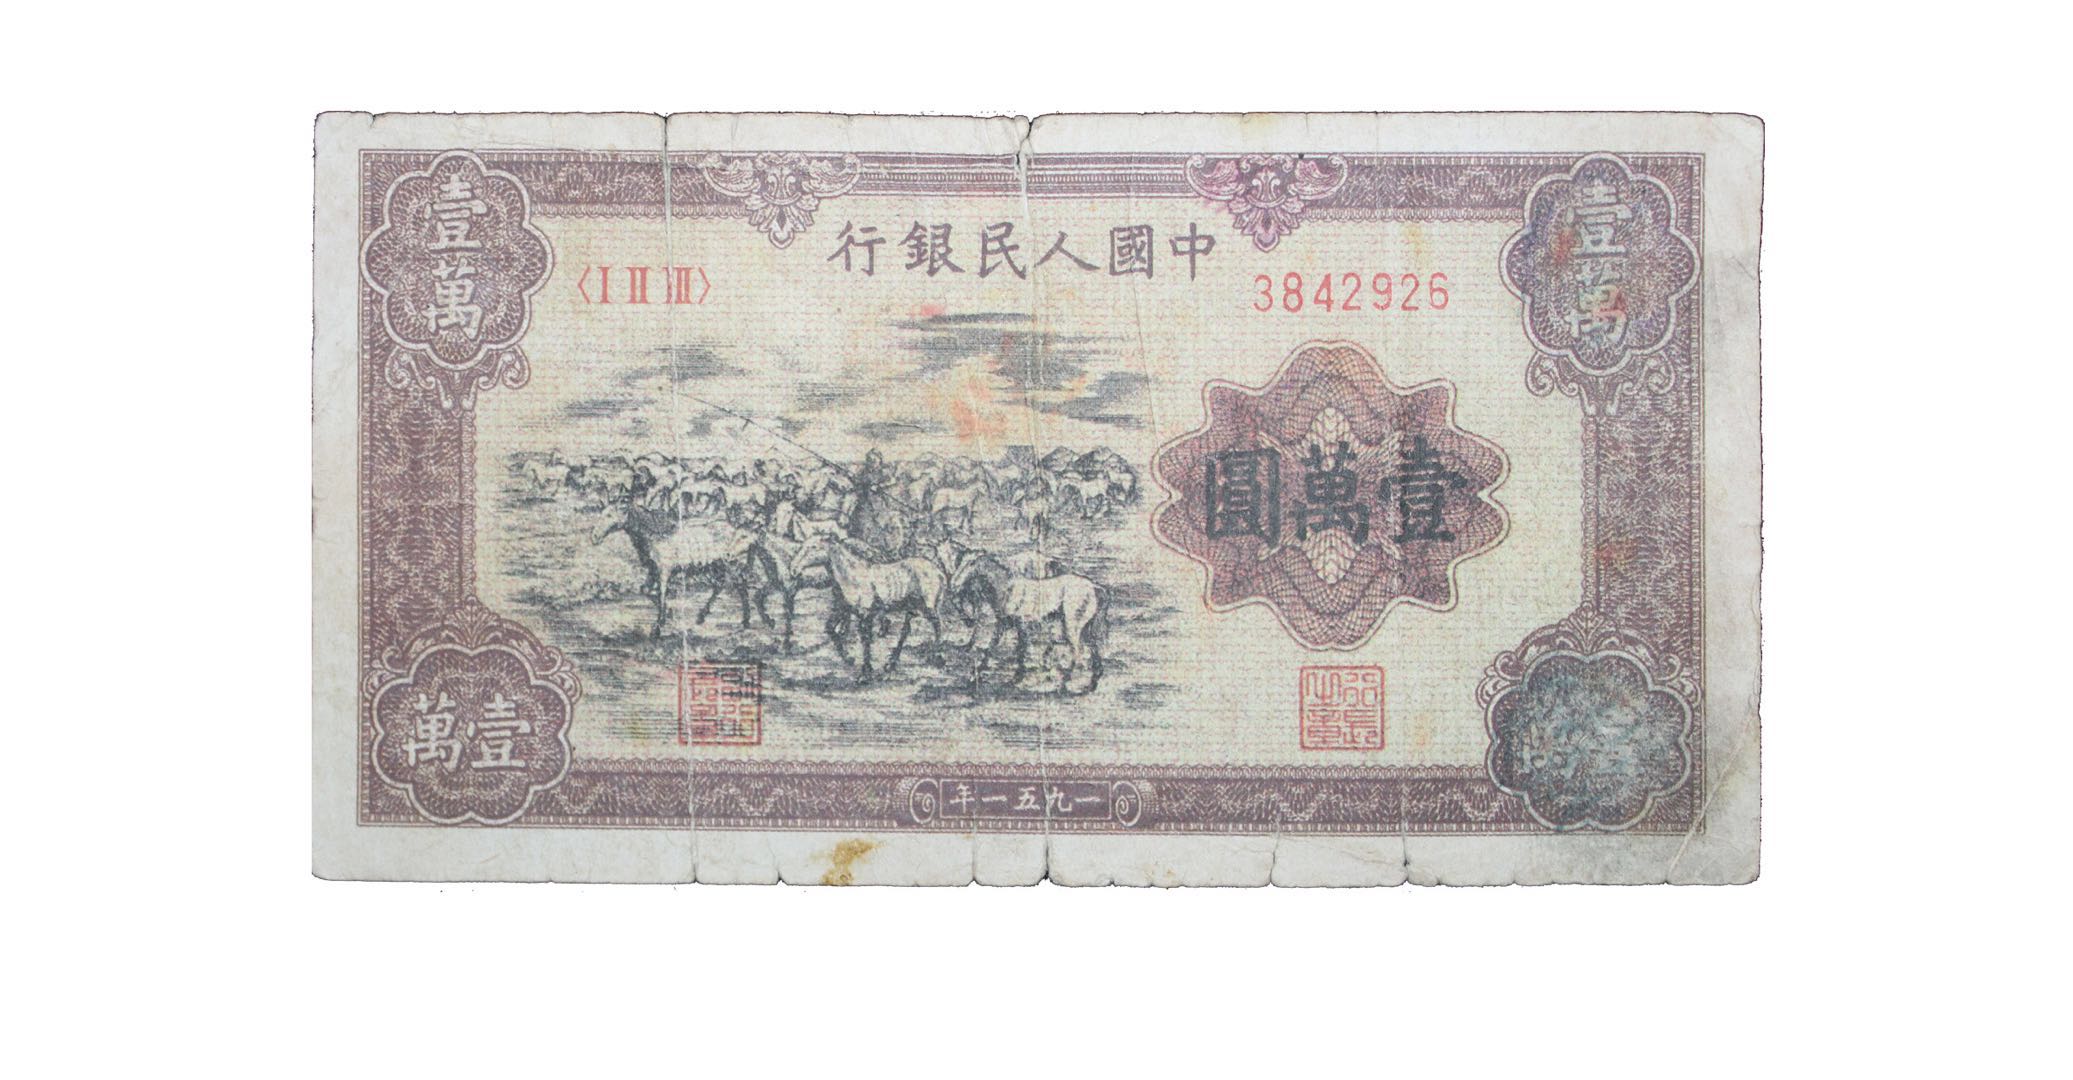 深圳弈轩有幸征得一枚1951年牧马图版一万元人民币,长:14cm,宽:7